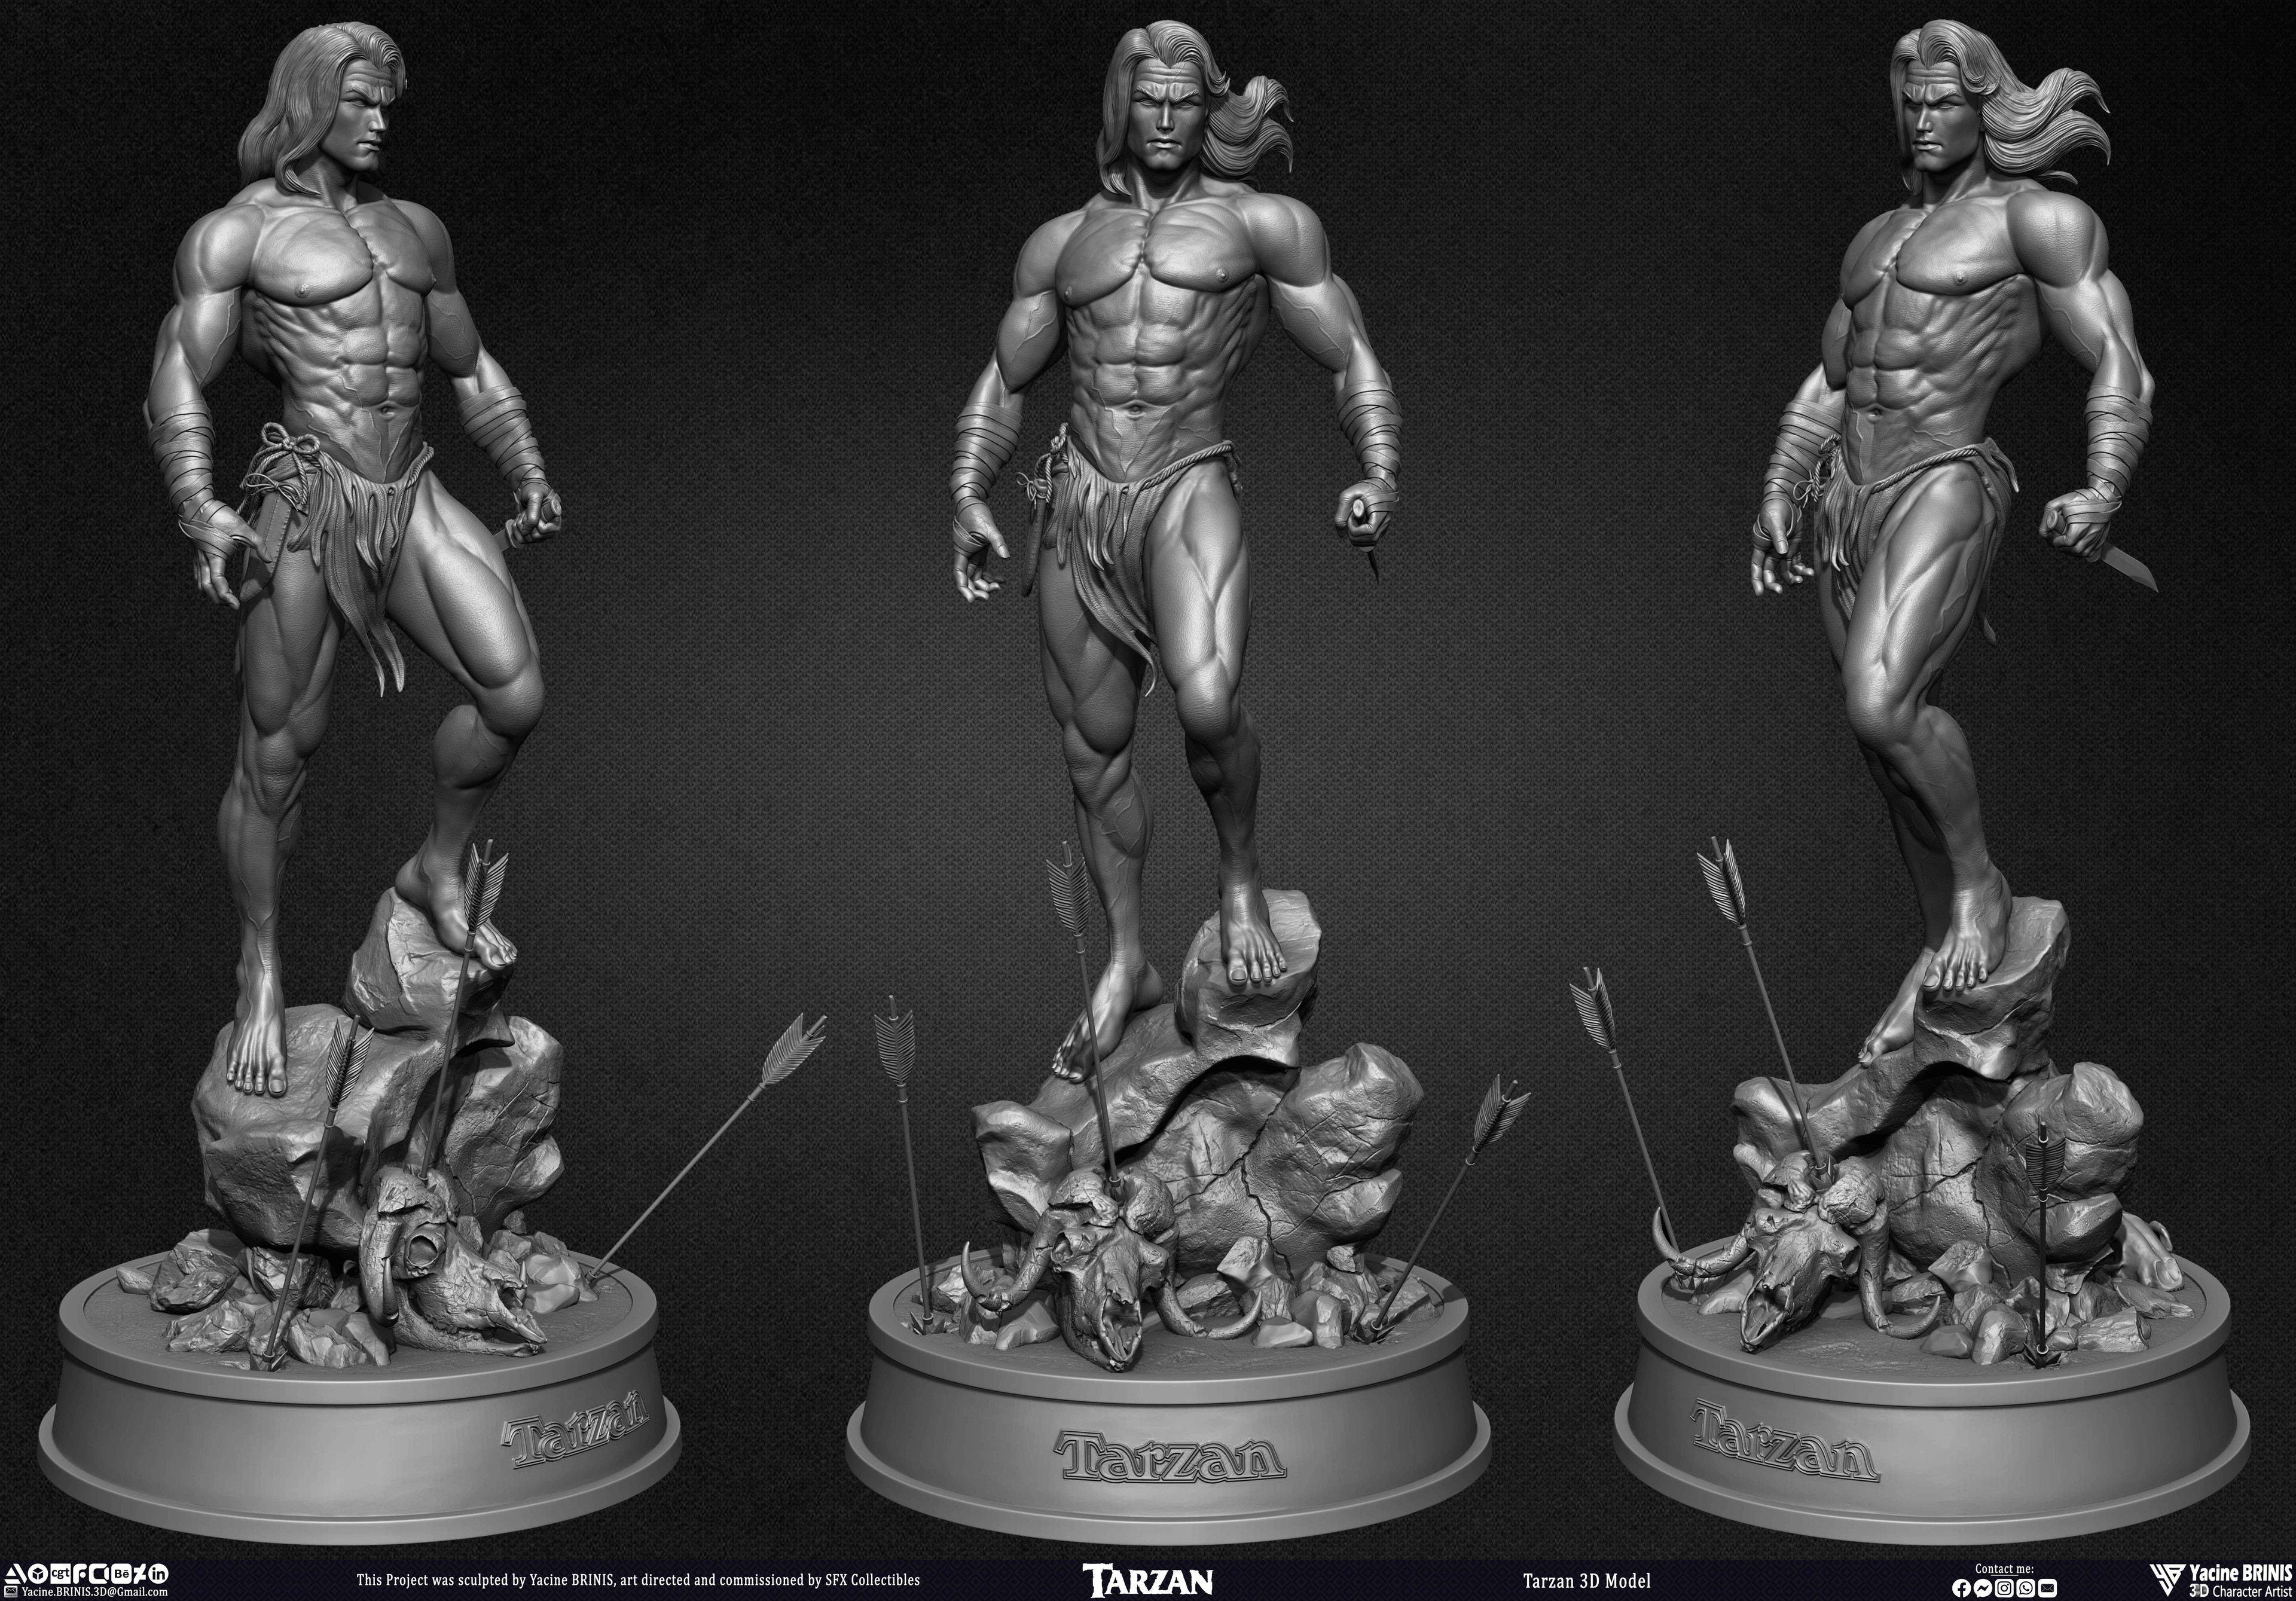 Tarzan 3D Model sculpted by Yacine BRINIS 010